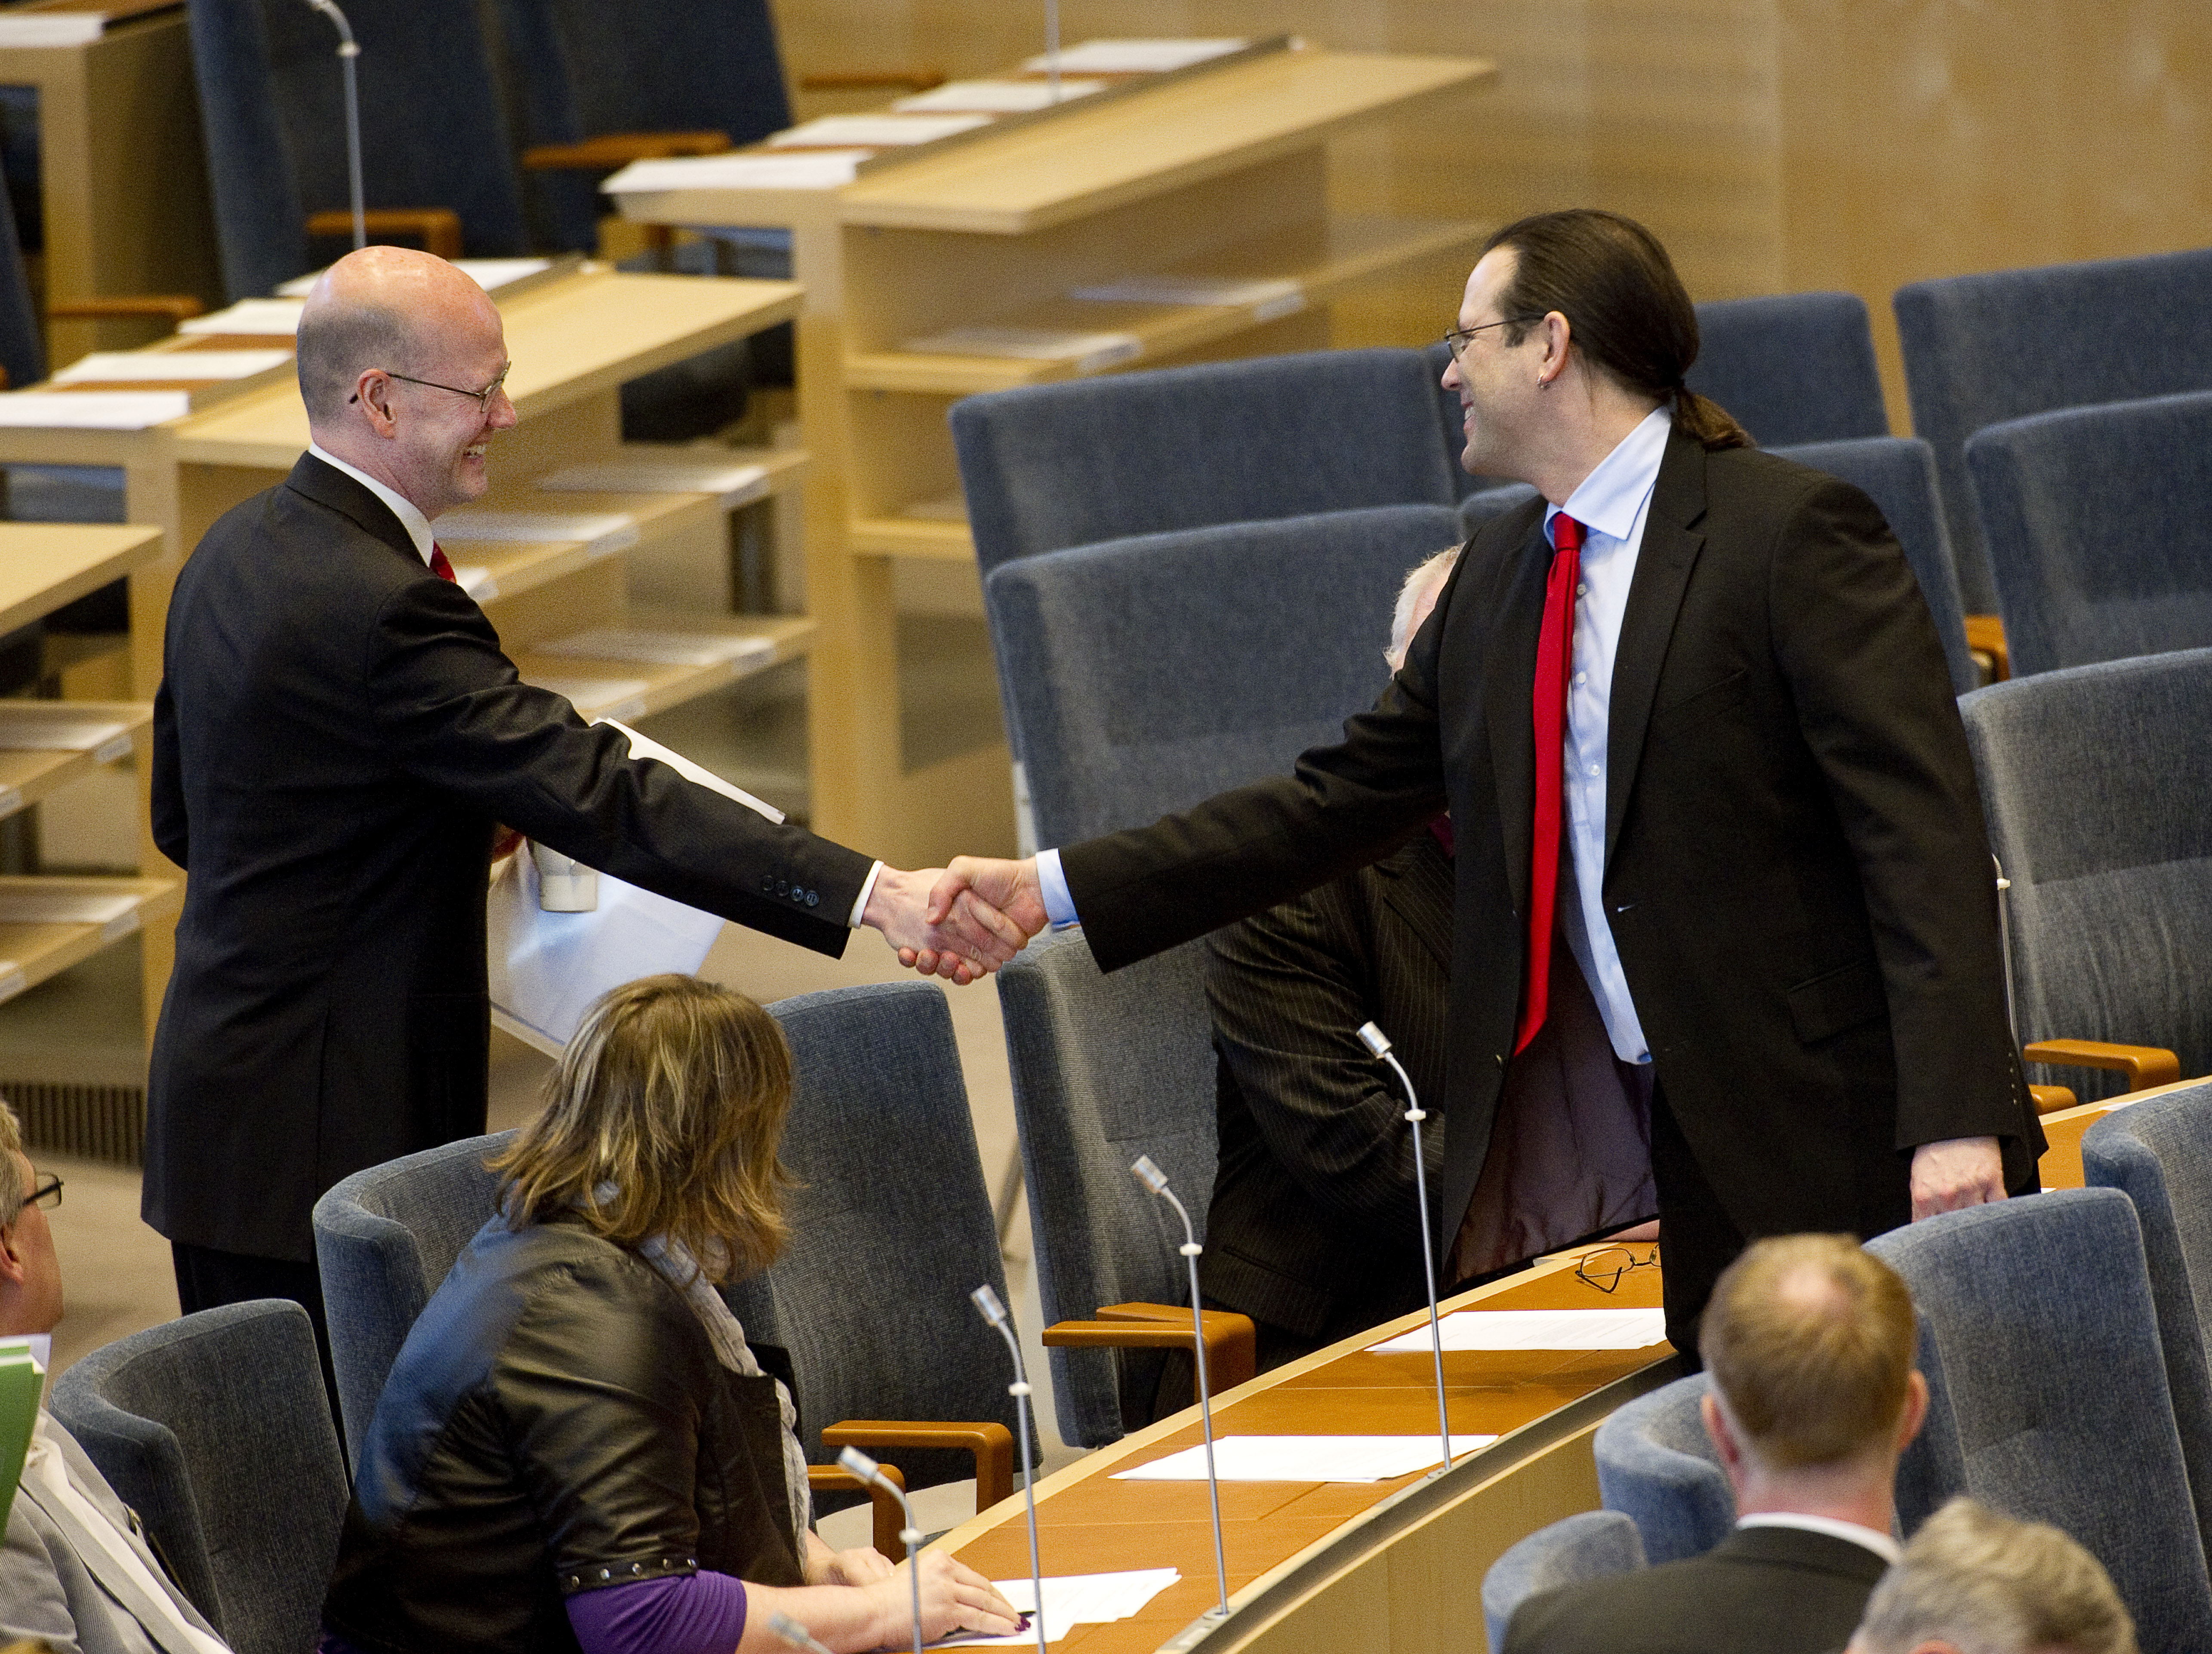 Alliansen, Jobb, Regeringen, Riksdagsvalet 2010, Anders Borg